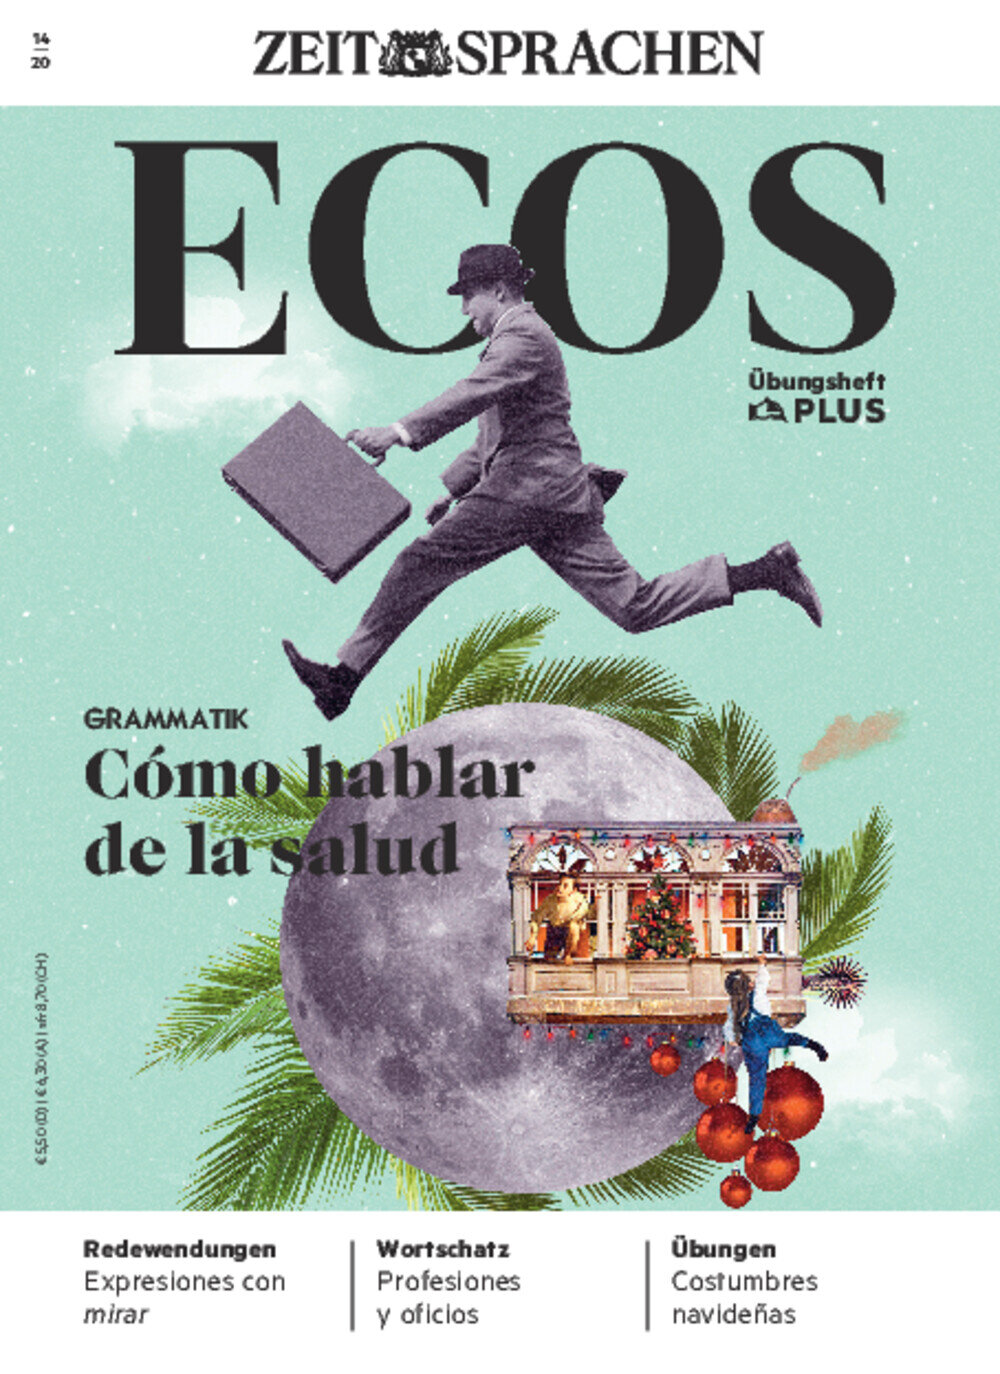 Ecos PLUS ePaper 14/2020